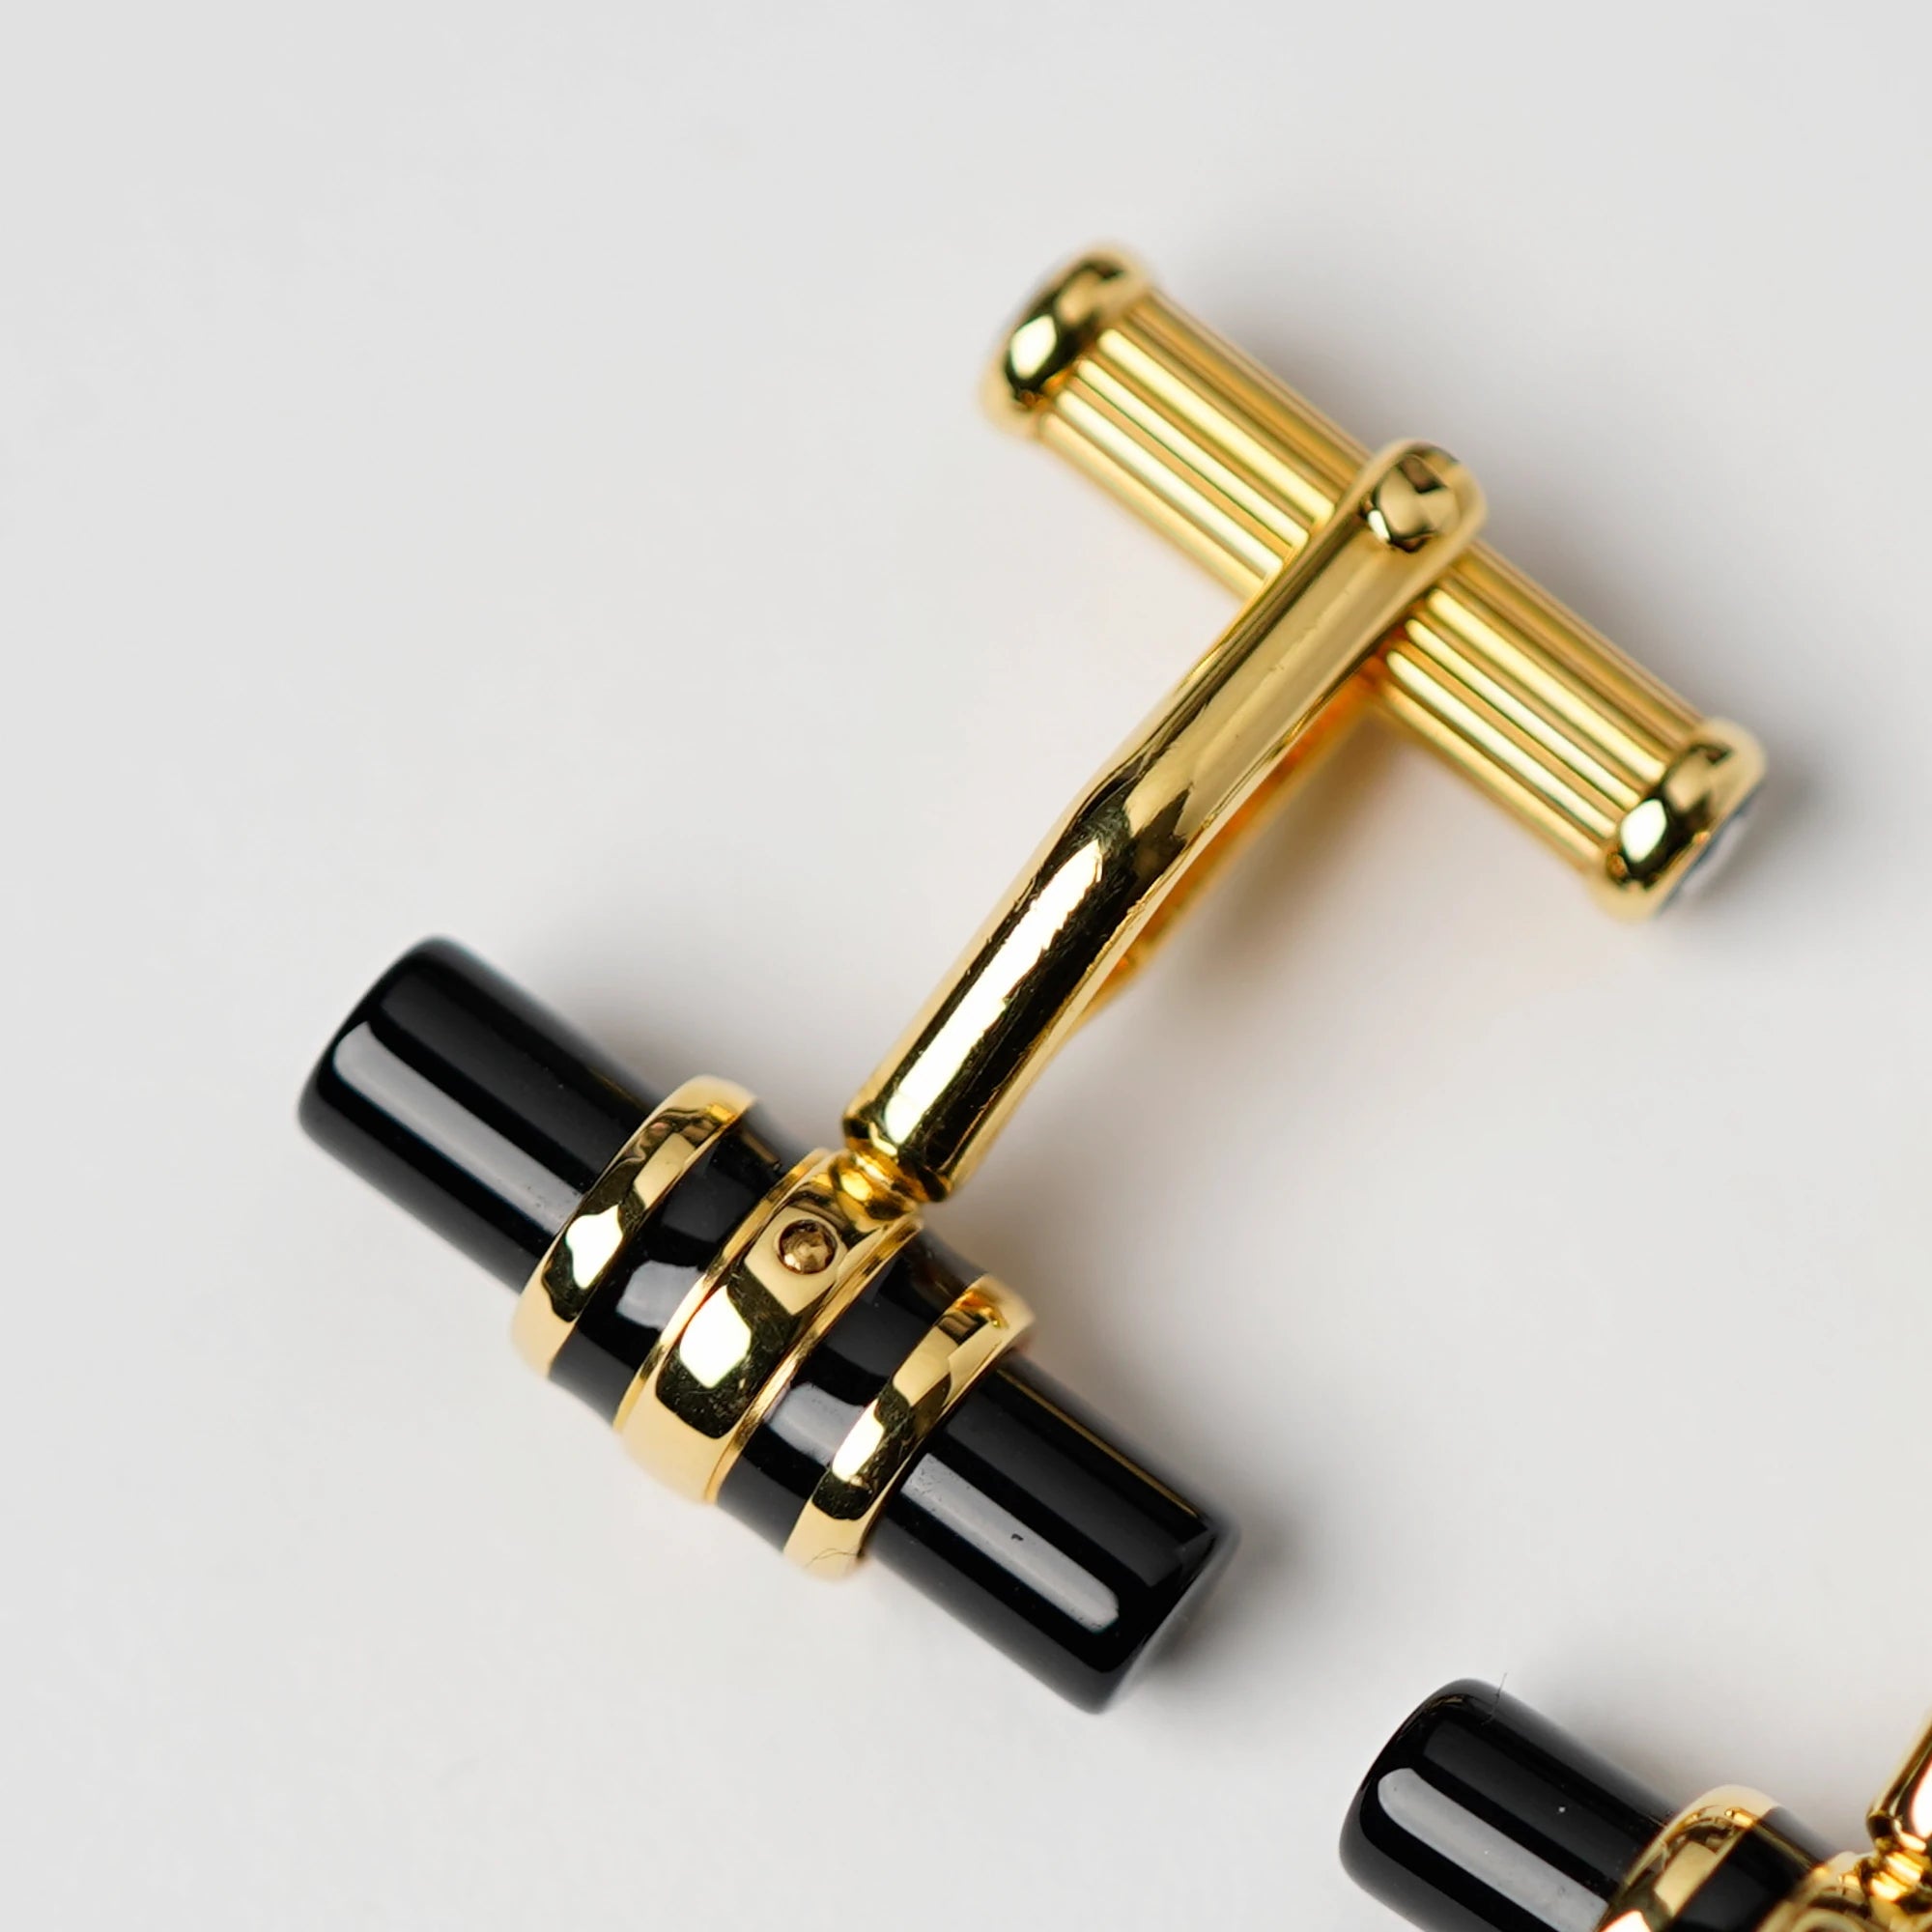 Detailaufnahme der Gold-plattinierten Manschettenknöpfe Elegance Bar 3 mit Onyx-Stift von Mont Blanc